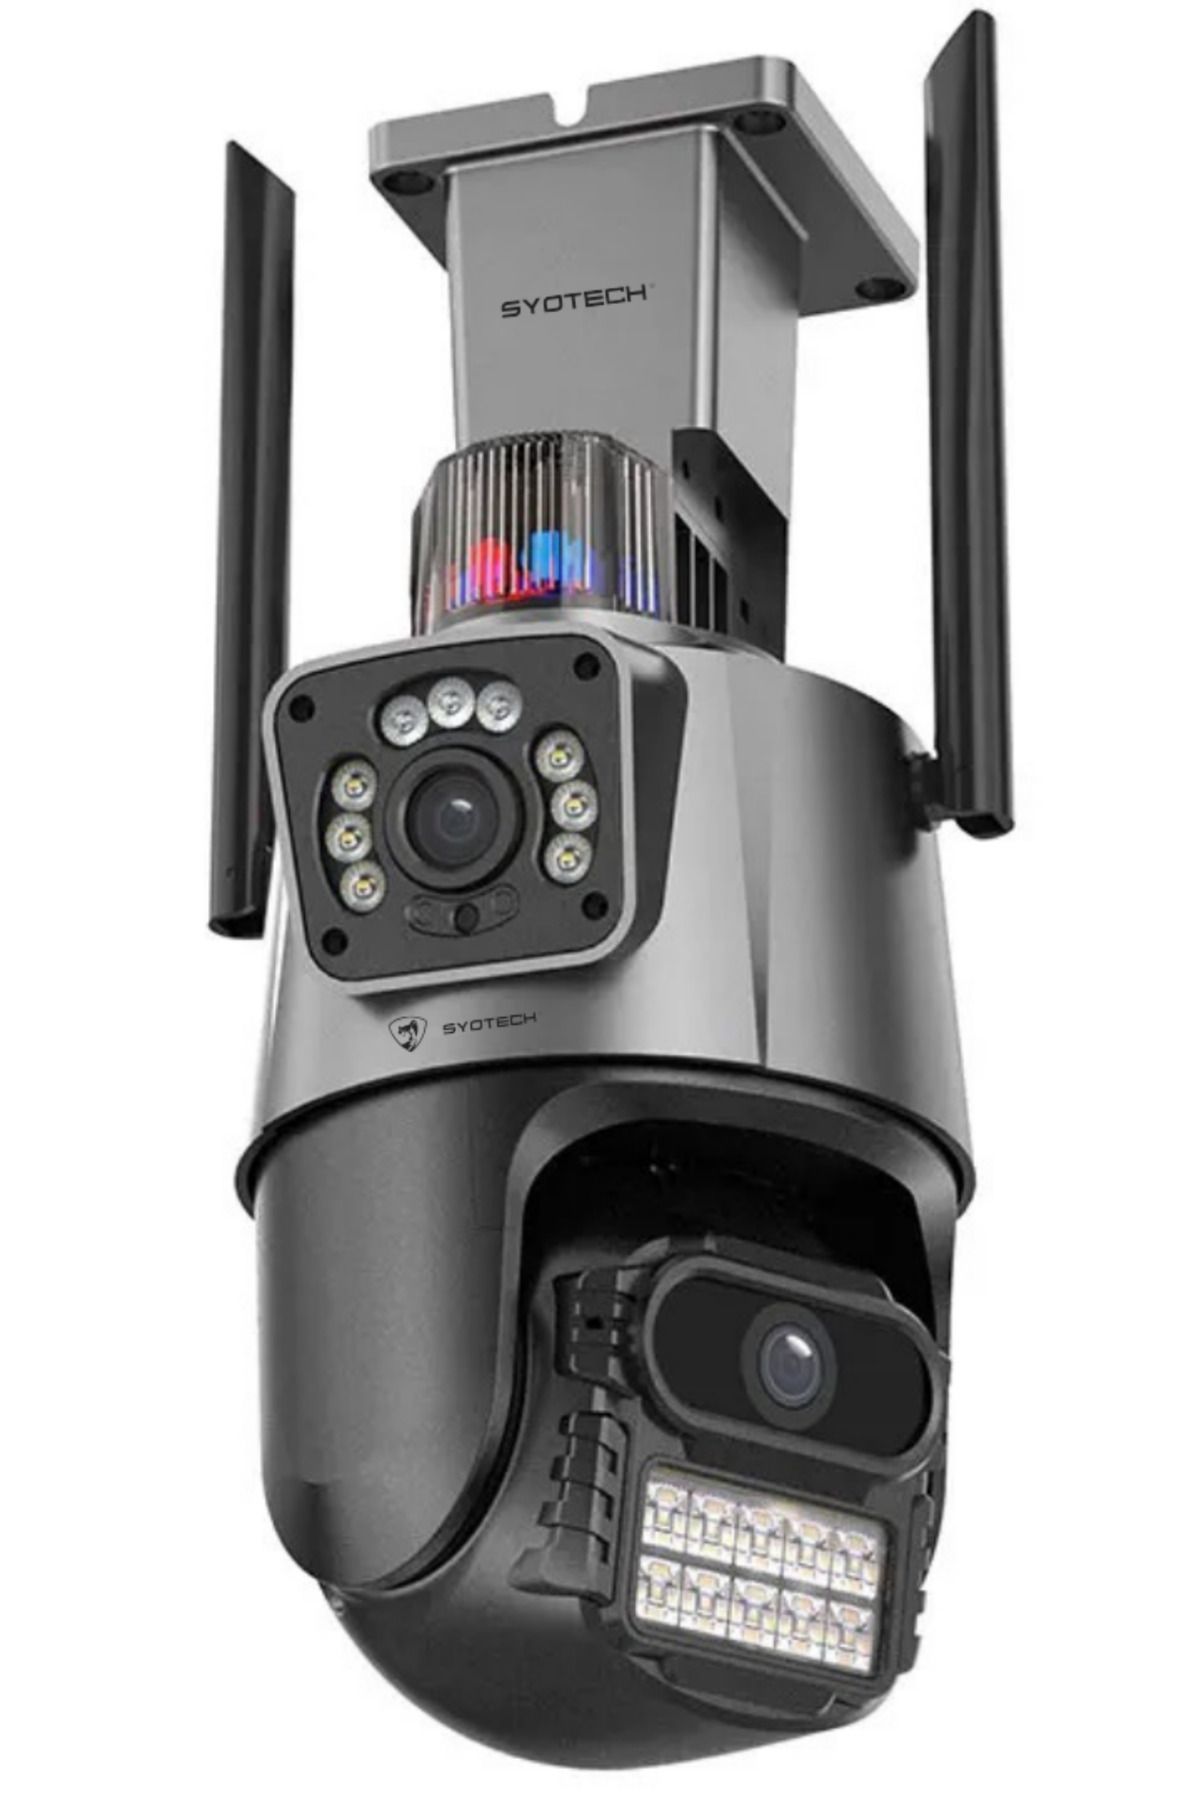 SyoTech güvenlik kamerası,alarm sistemli,çift kameralı,basit kurulum heryerden takip